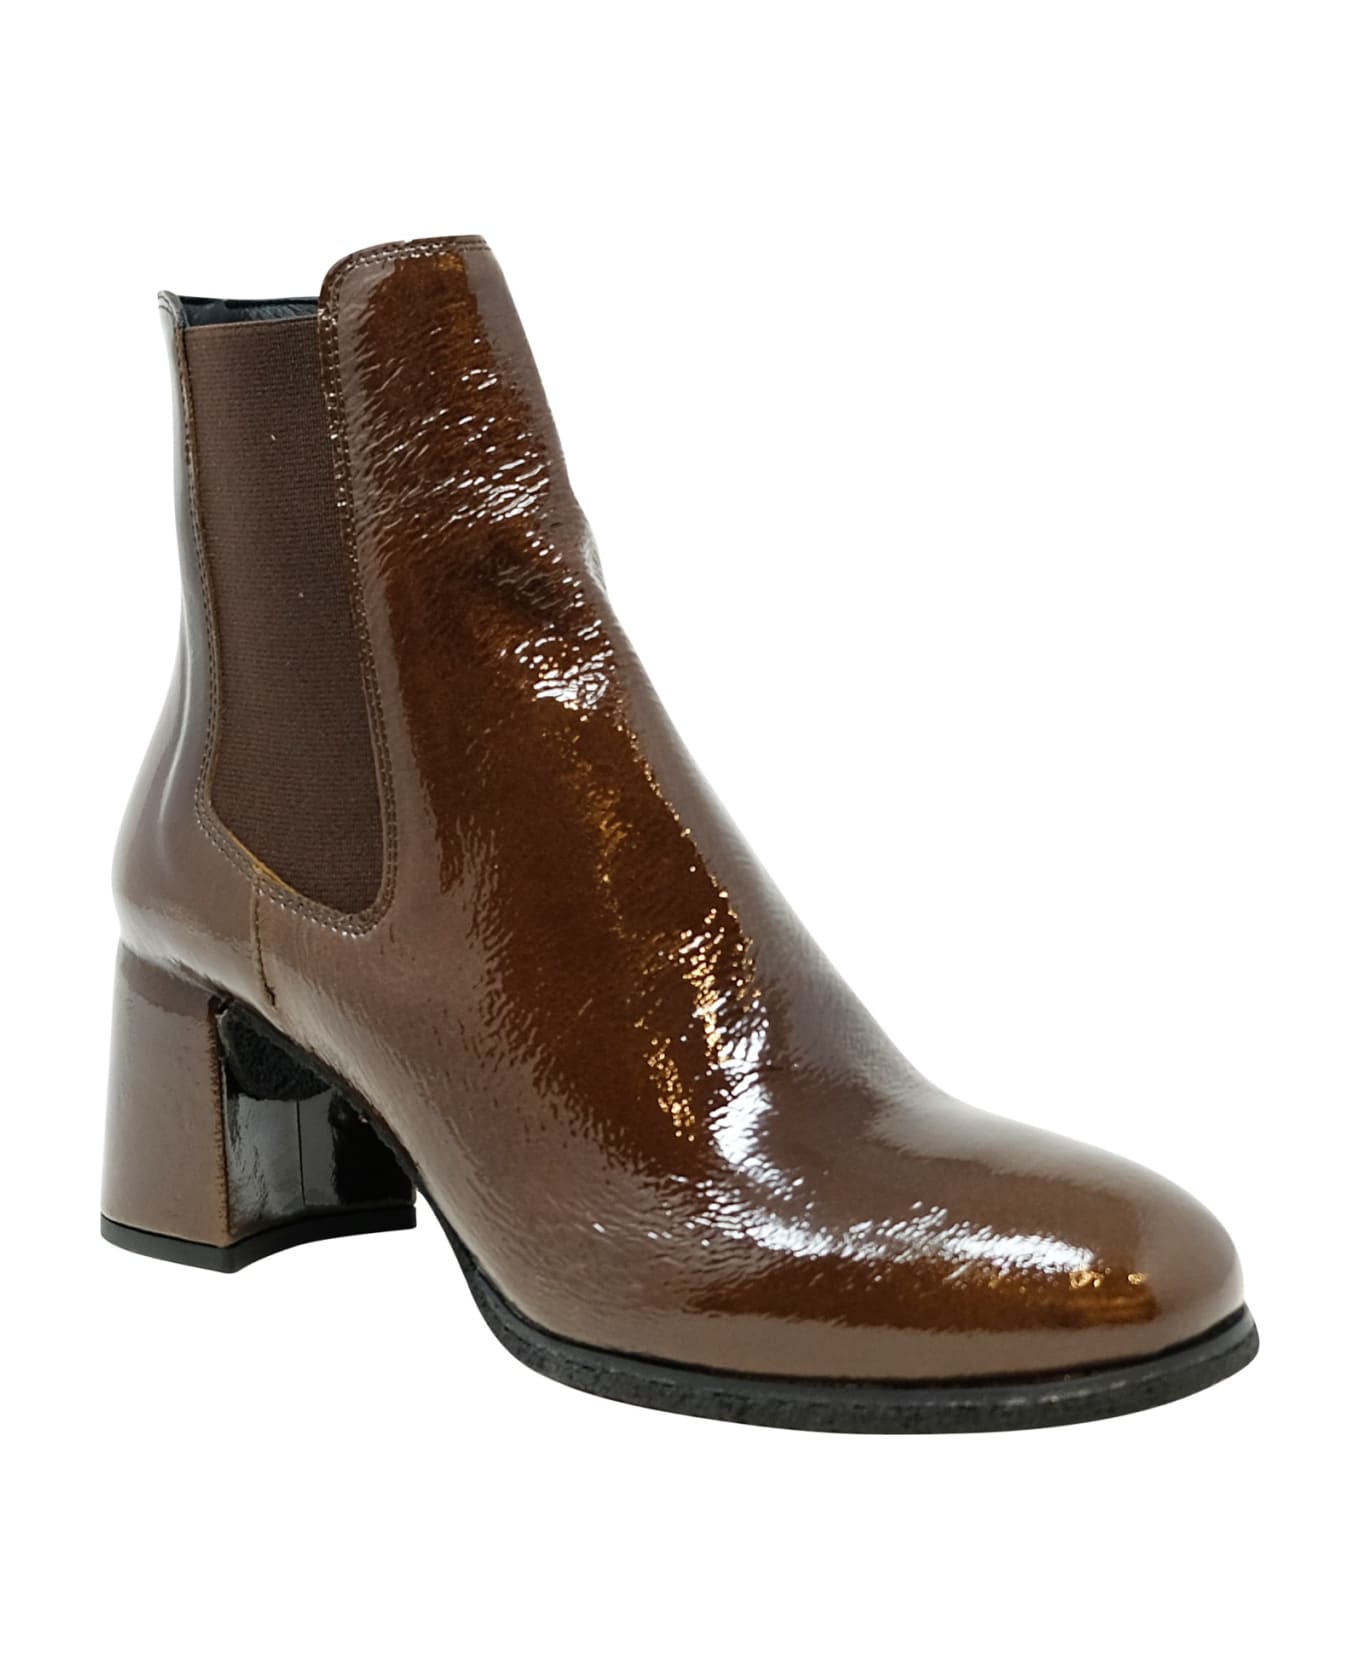 Del Carlo Roberto Del Carlo Patent Leather Holly Boots - DARK BROWN